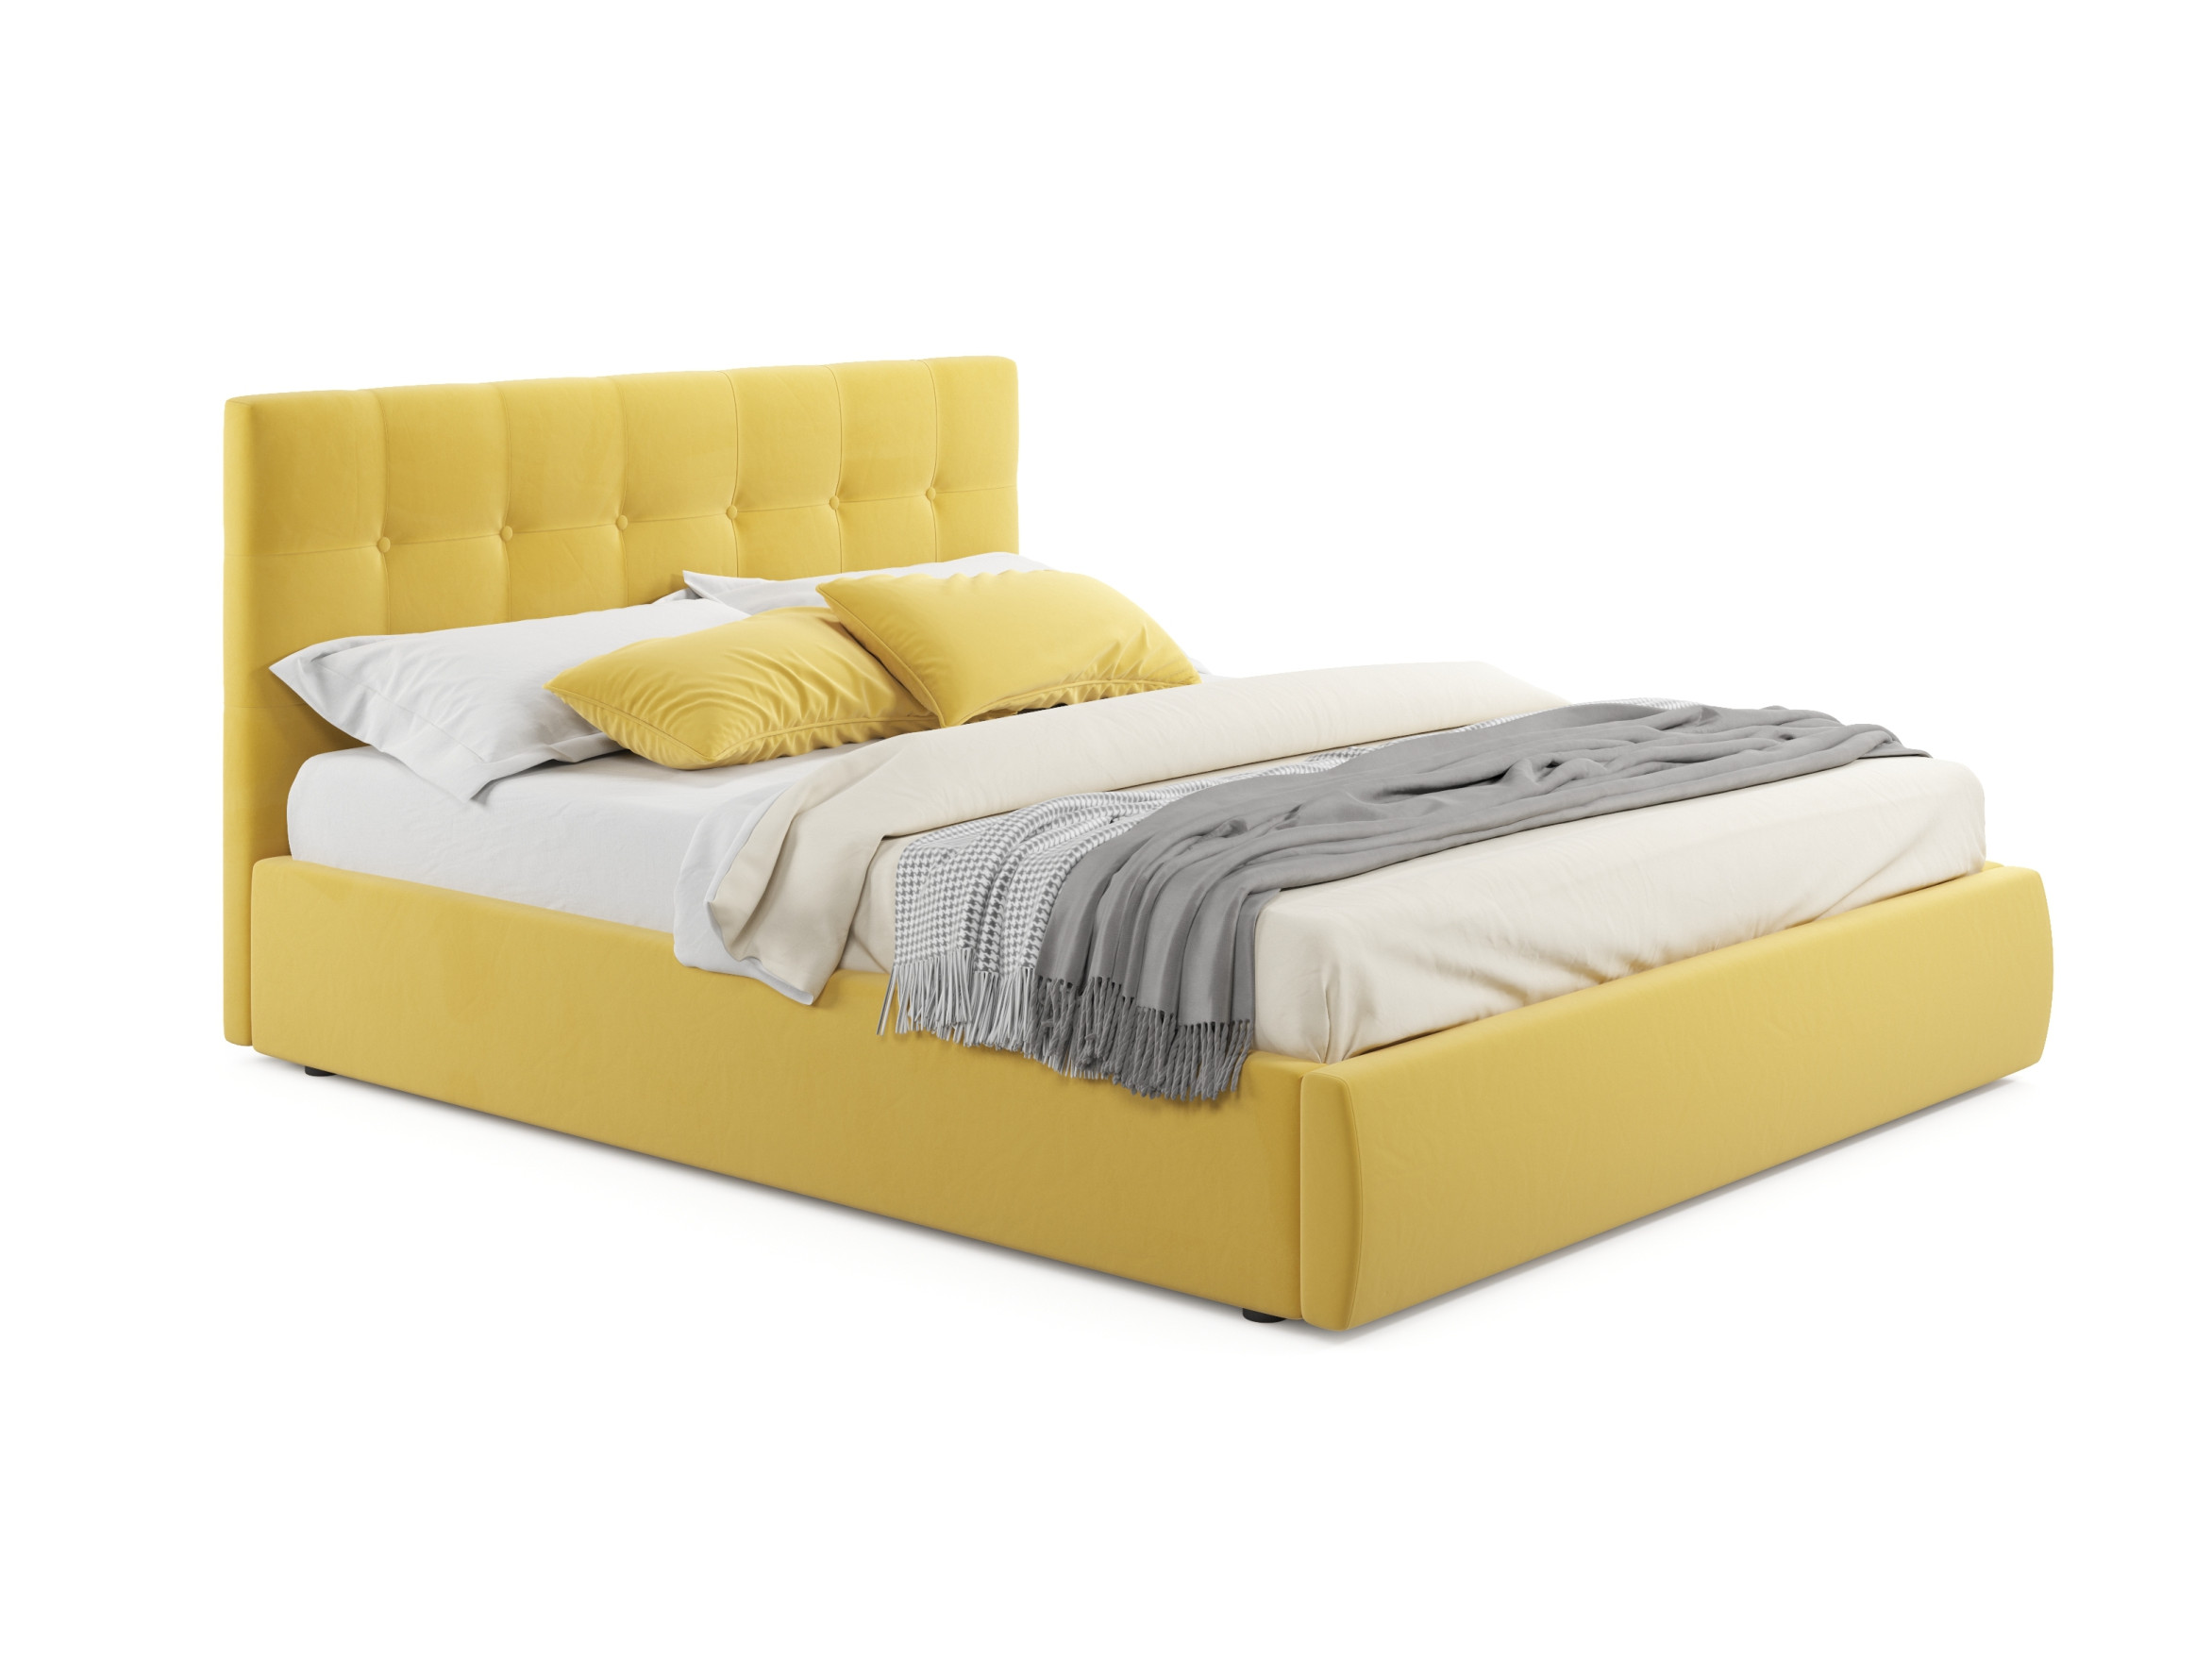 Мягкая кровать Selesta 1800 желтая с матрасом PROMO B COCOS с под мягкая кровать selesta 1800 желтая с матрасом гост с подъемным механизмом желтый желтый велюр дсп